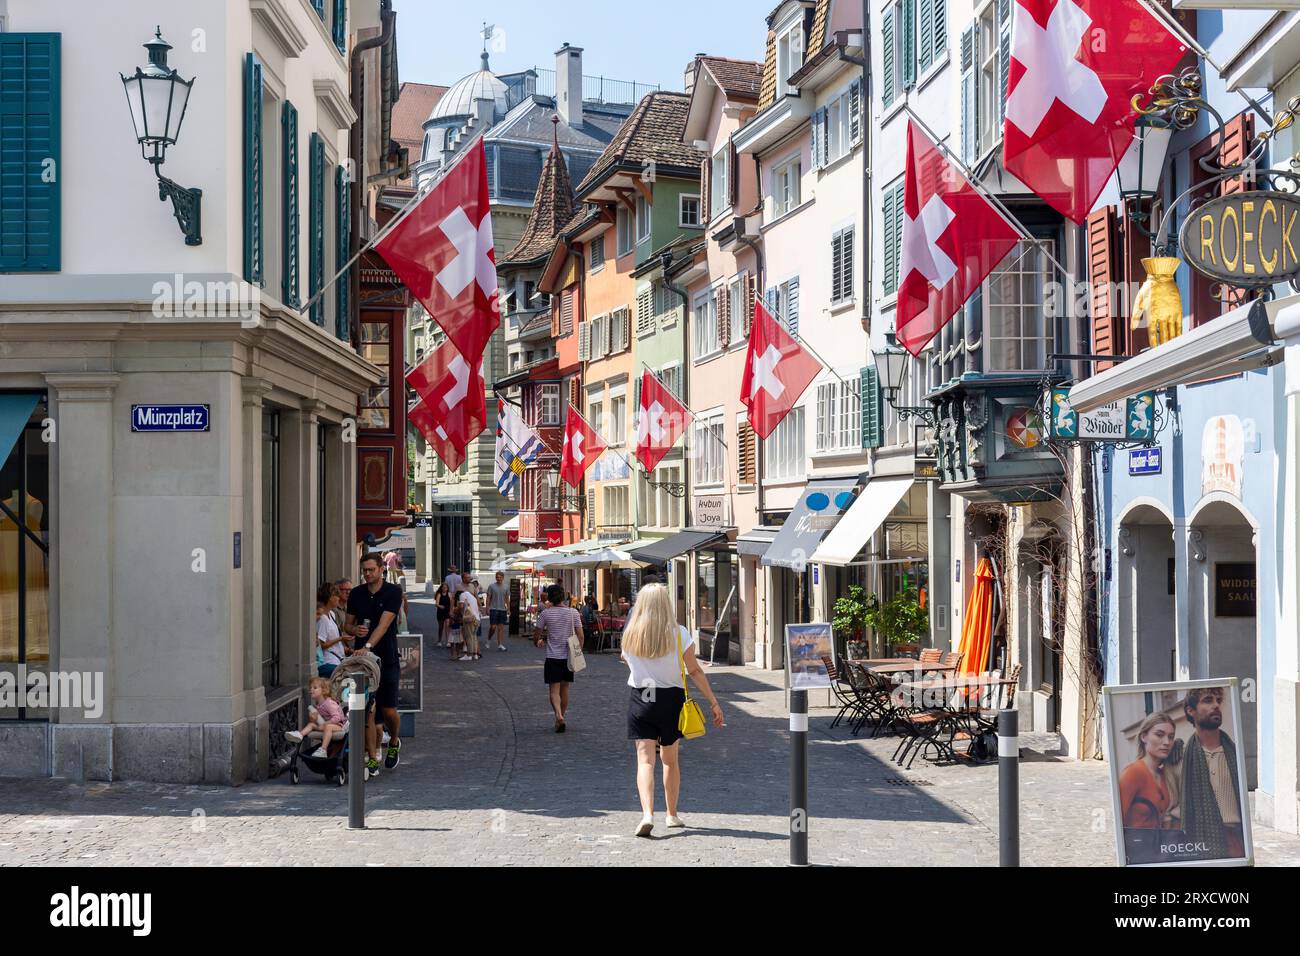 Pedestrianised street with Swiss flags, Augustinergasse, City of Zürich, Zürich, Switzerland Stock Photo